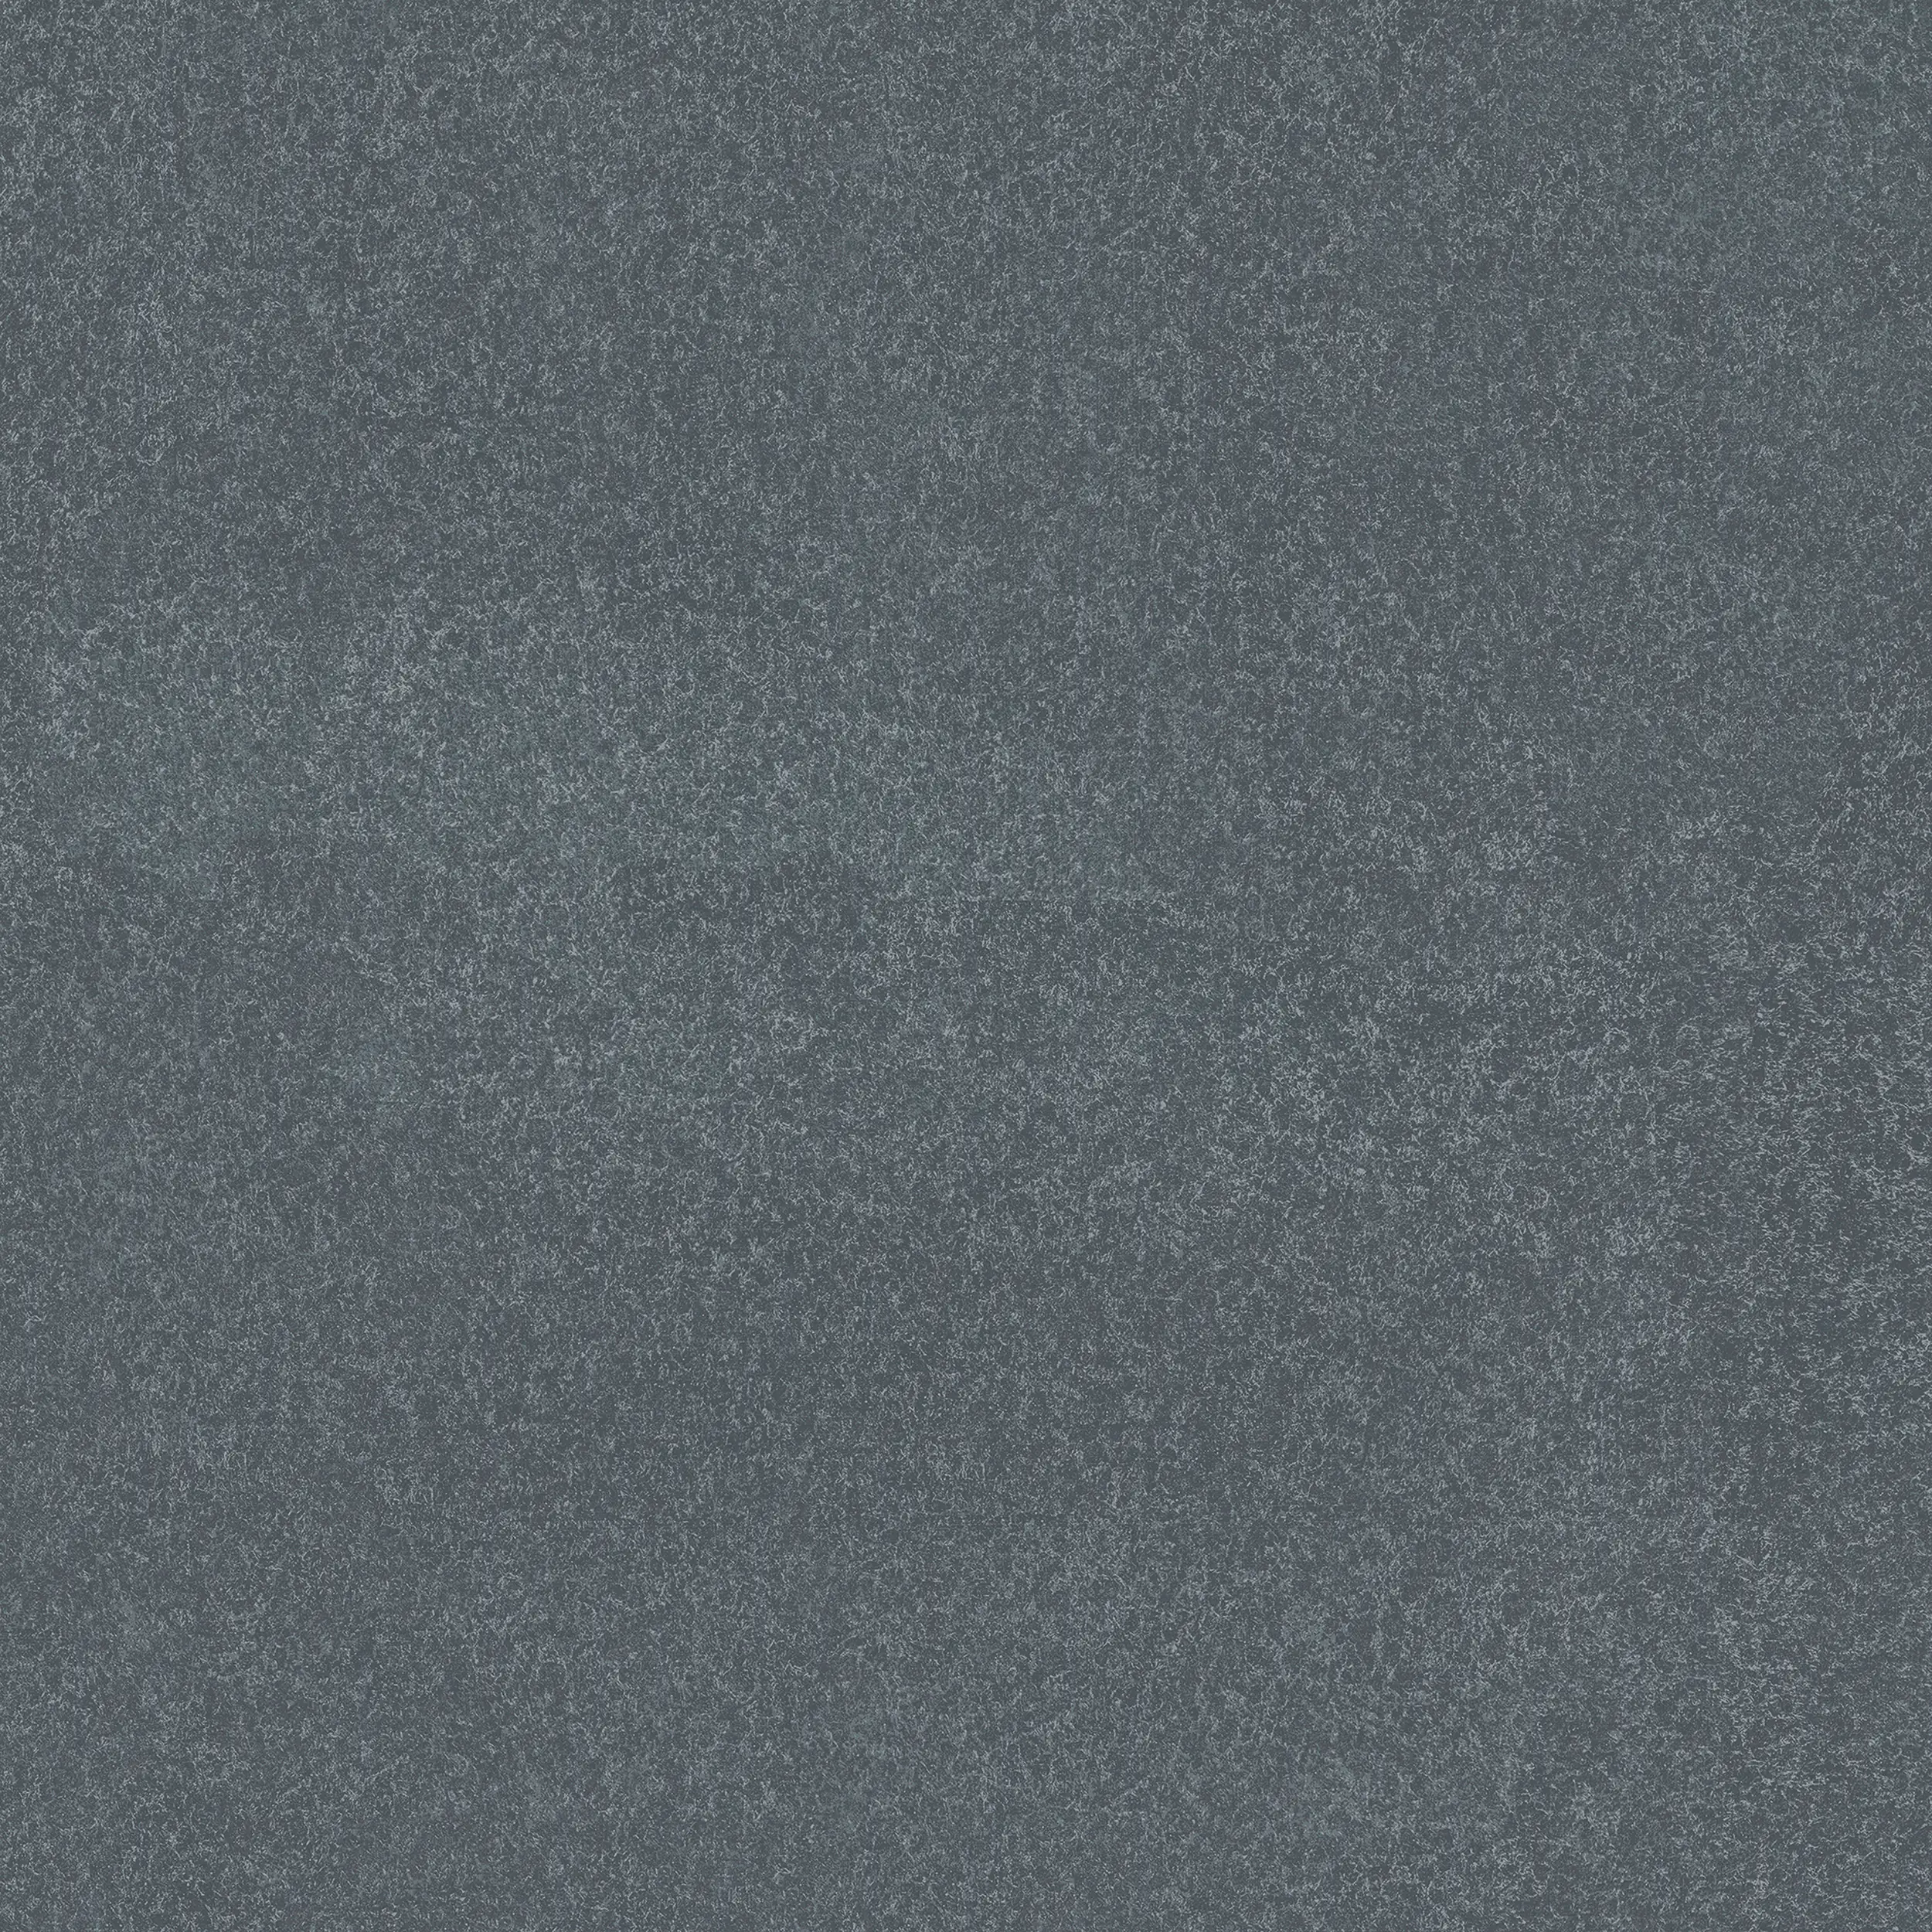 Terrassenplatte Feinsteinzeug Basalt Stone 60 x 60 x 3 cm grau kaufen |  Globus Baumarkt